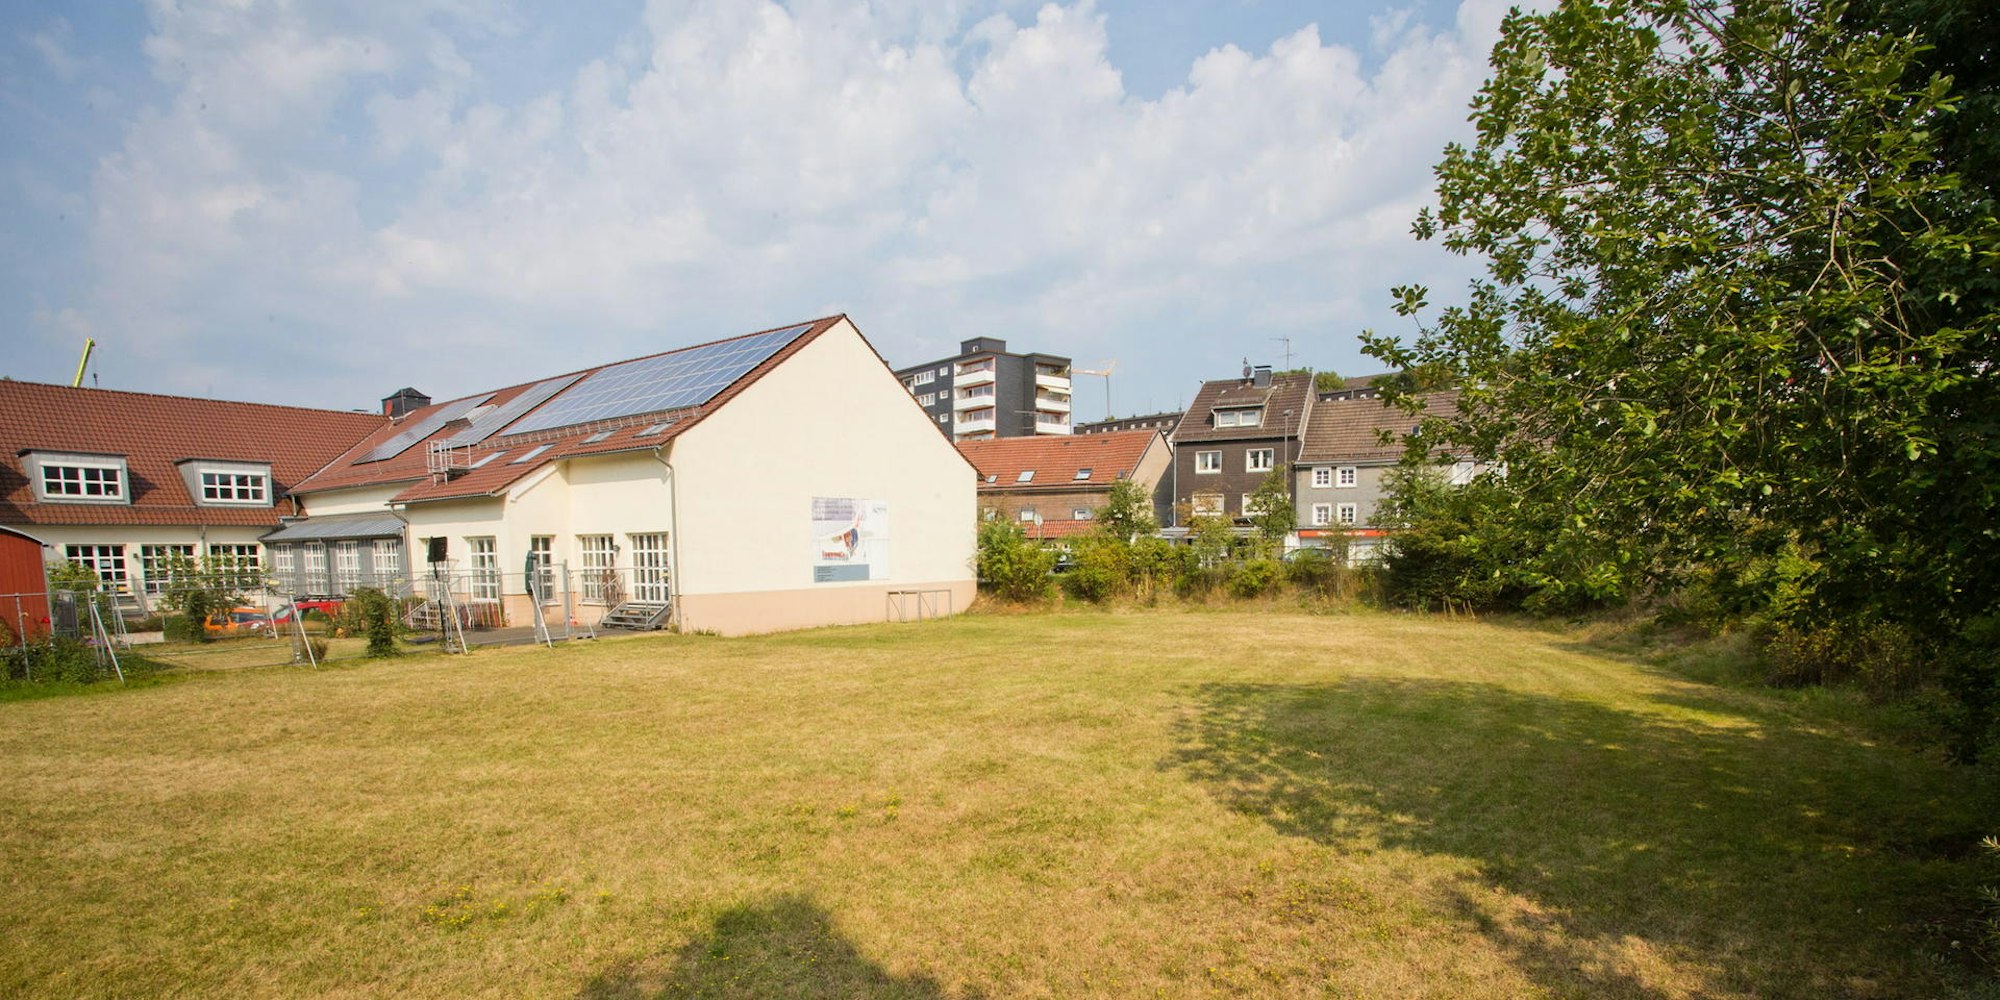 Mit Solarzellen auf dem Dach trägt der Krawinkelsaal bereits zum Klimaschutz bei. Dort sollen Bergneustädter am 23. Juni Ideen abliefern, was außerdem für die Umwelt getan werden kann.